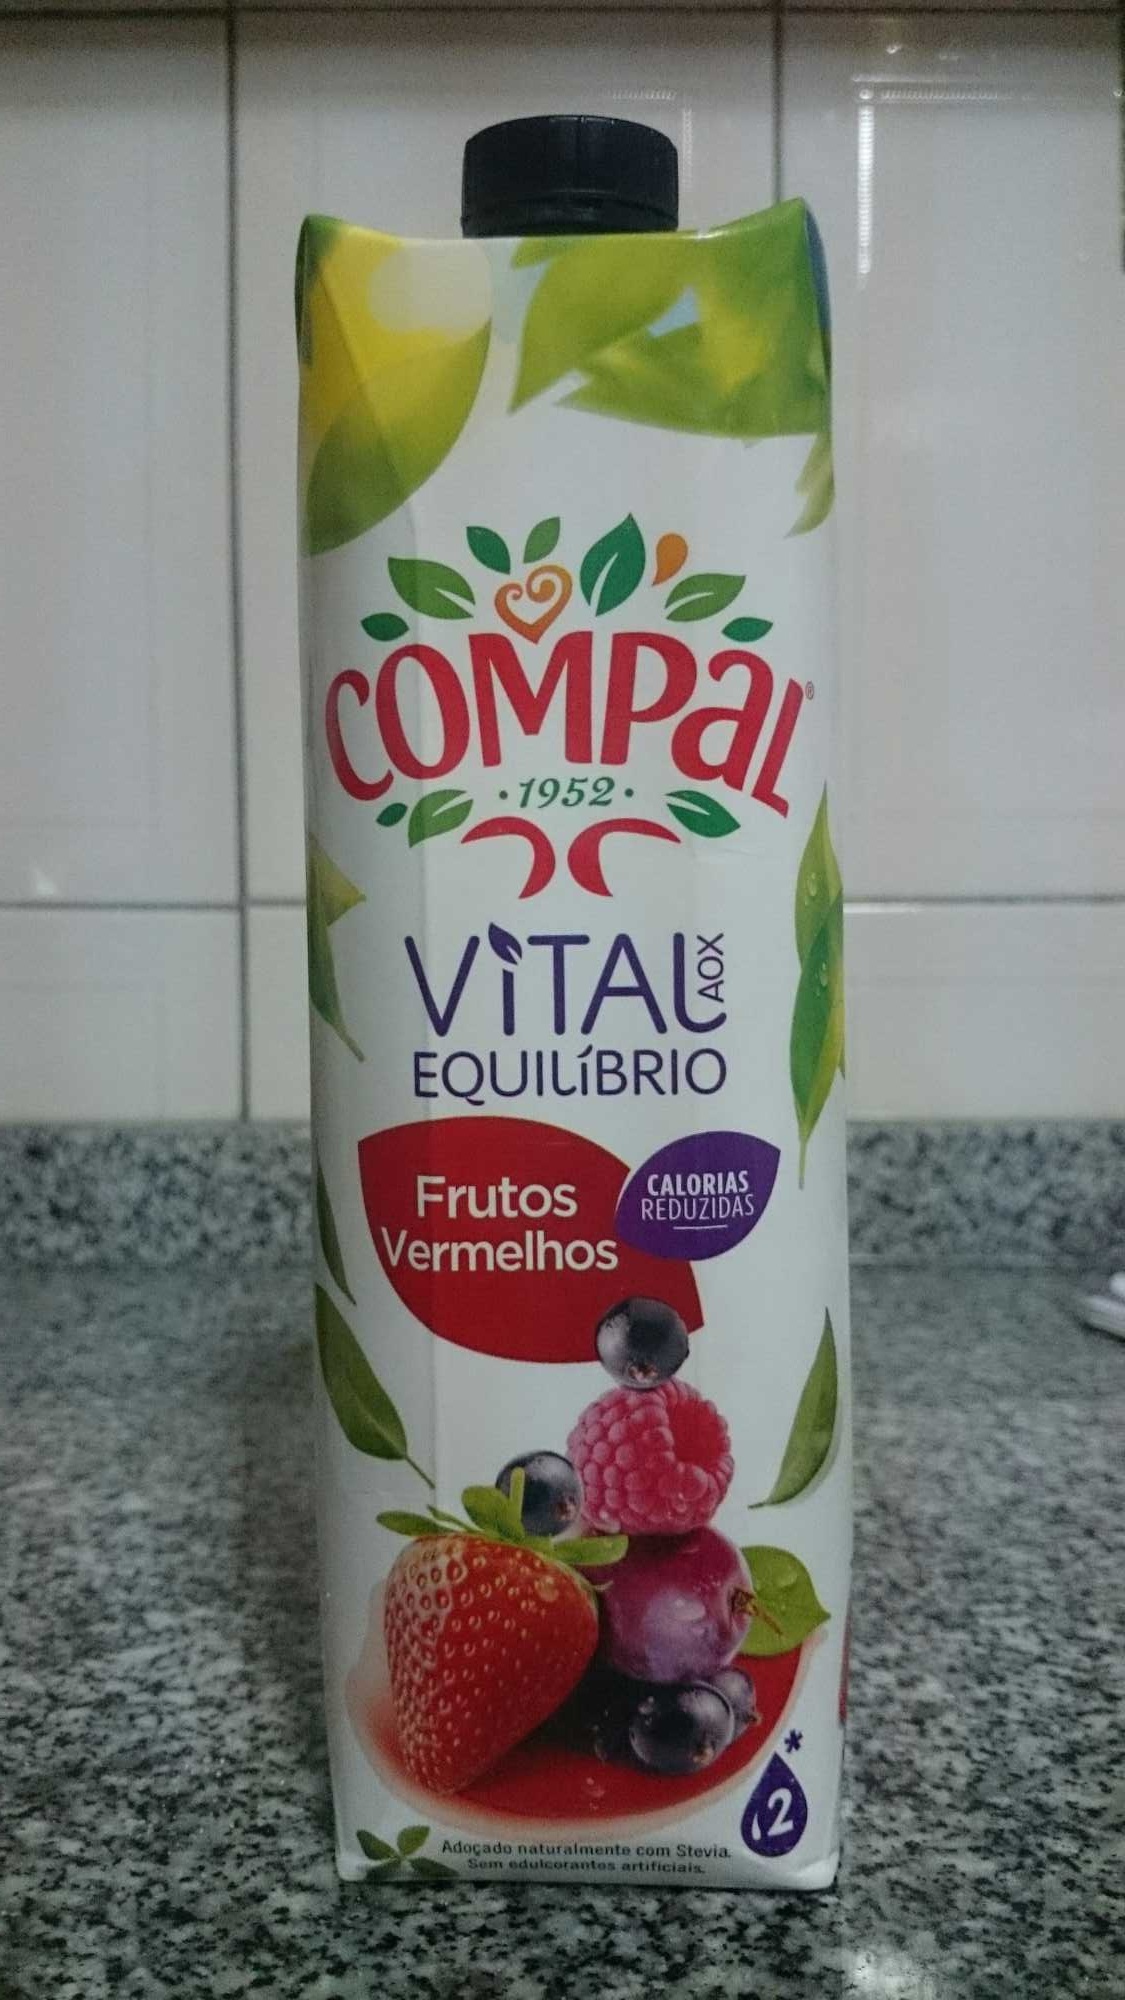 Compal Vital Frutos Vermelhos - Produto